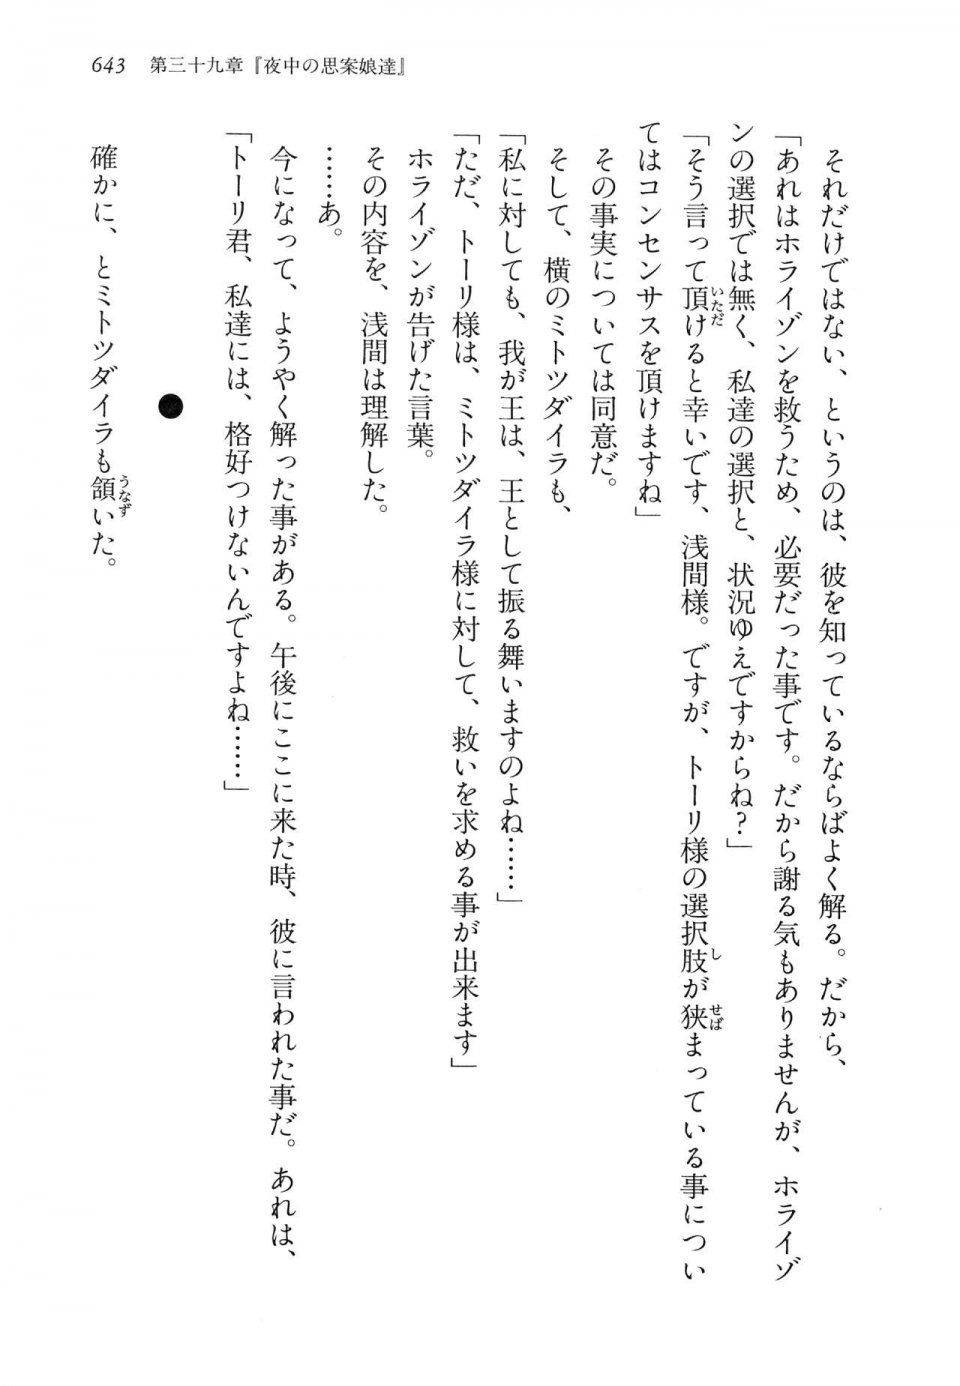 Kyoukai Senjou no Horizon LN Vol 14(6B) - Photo #643